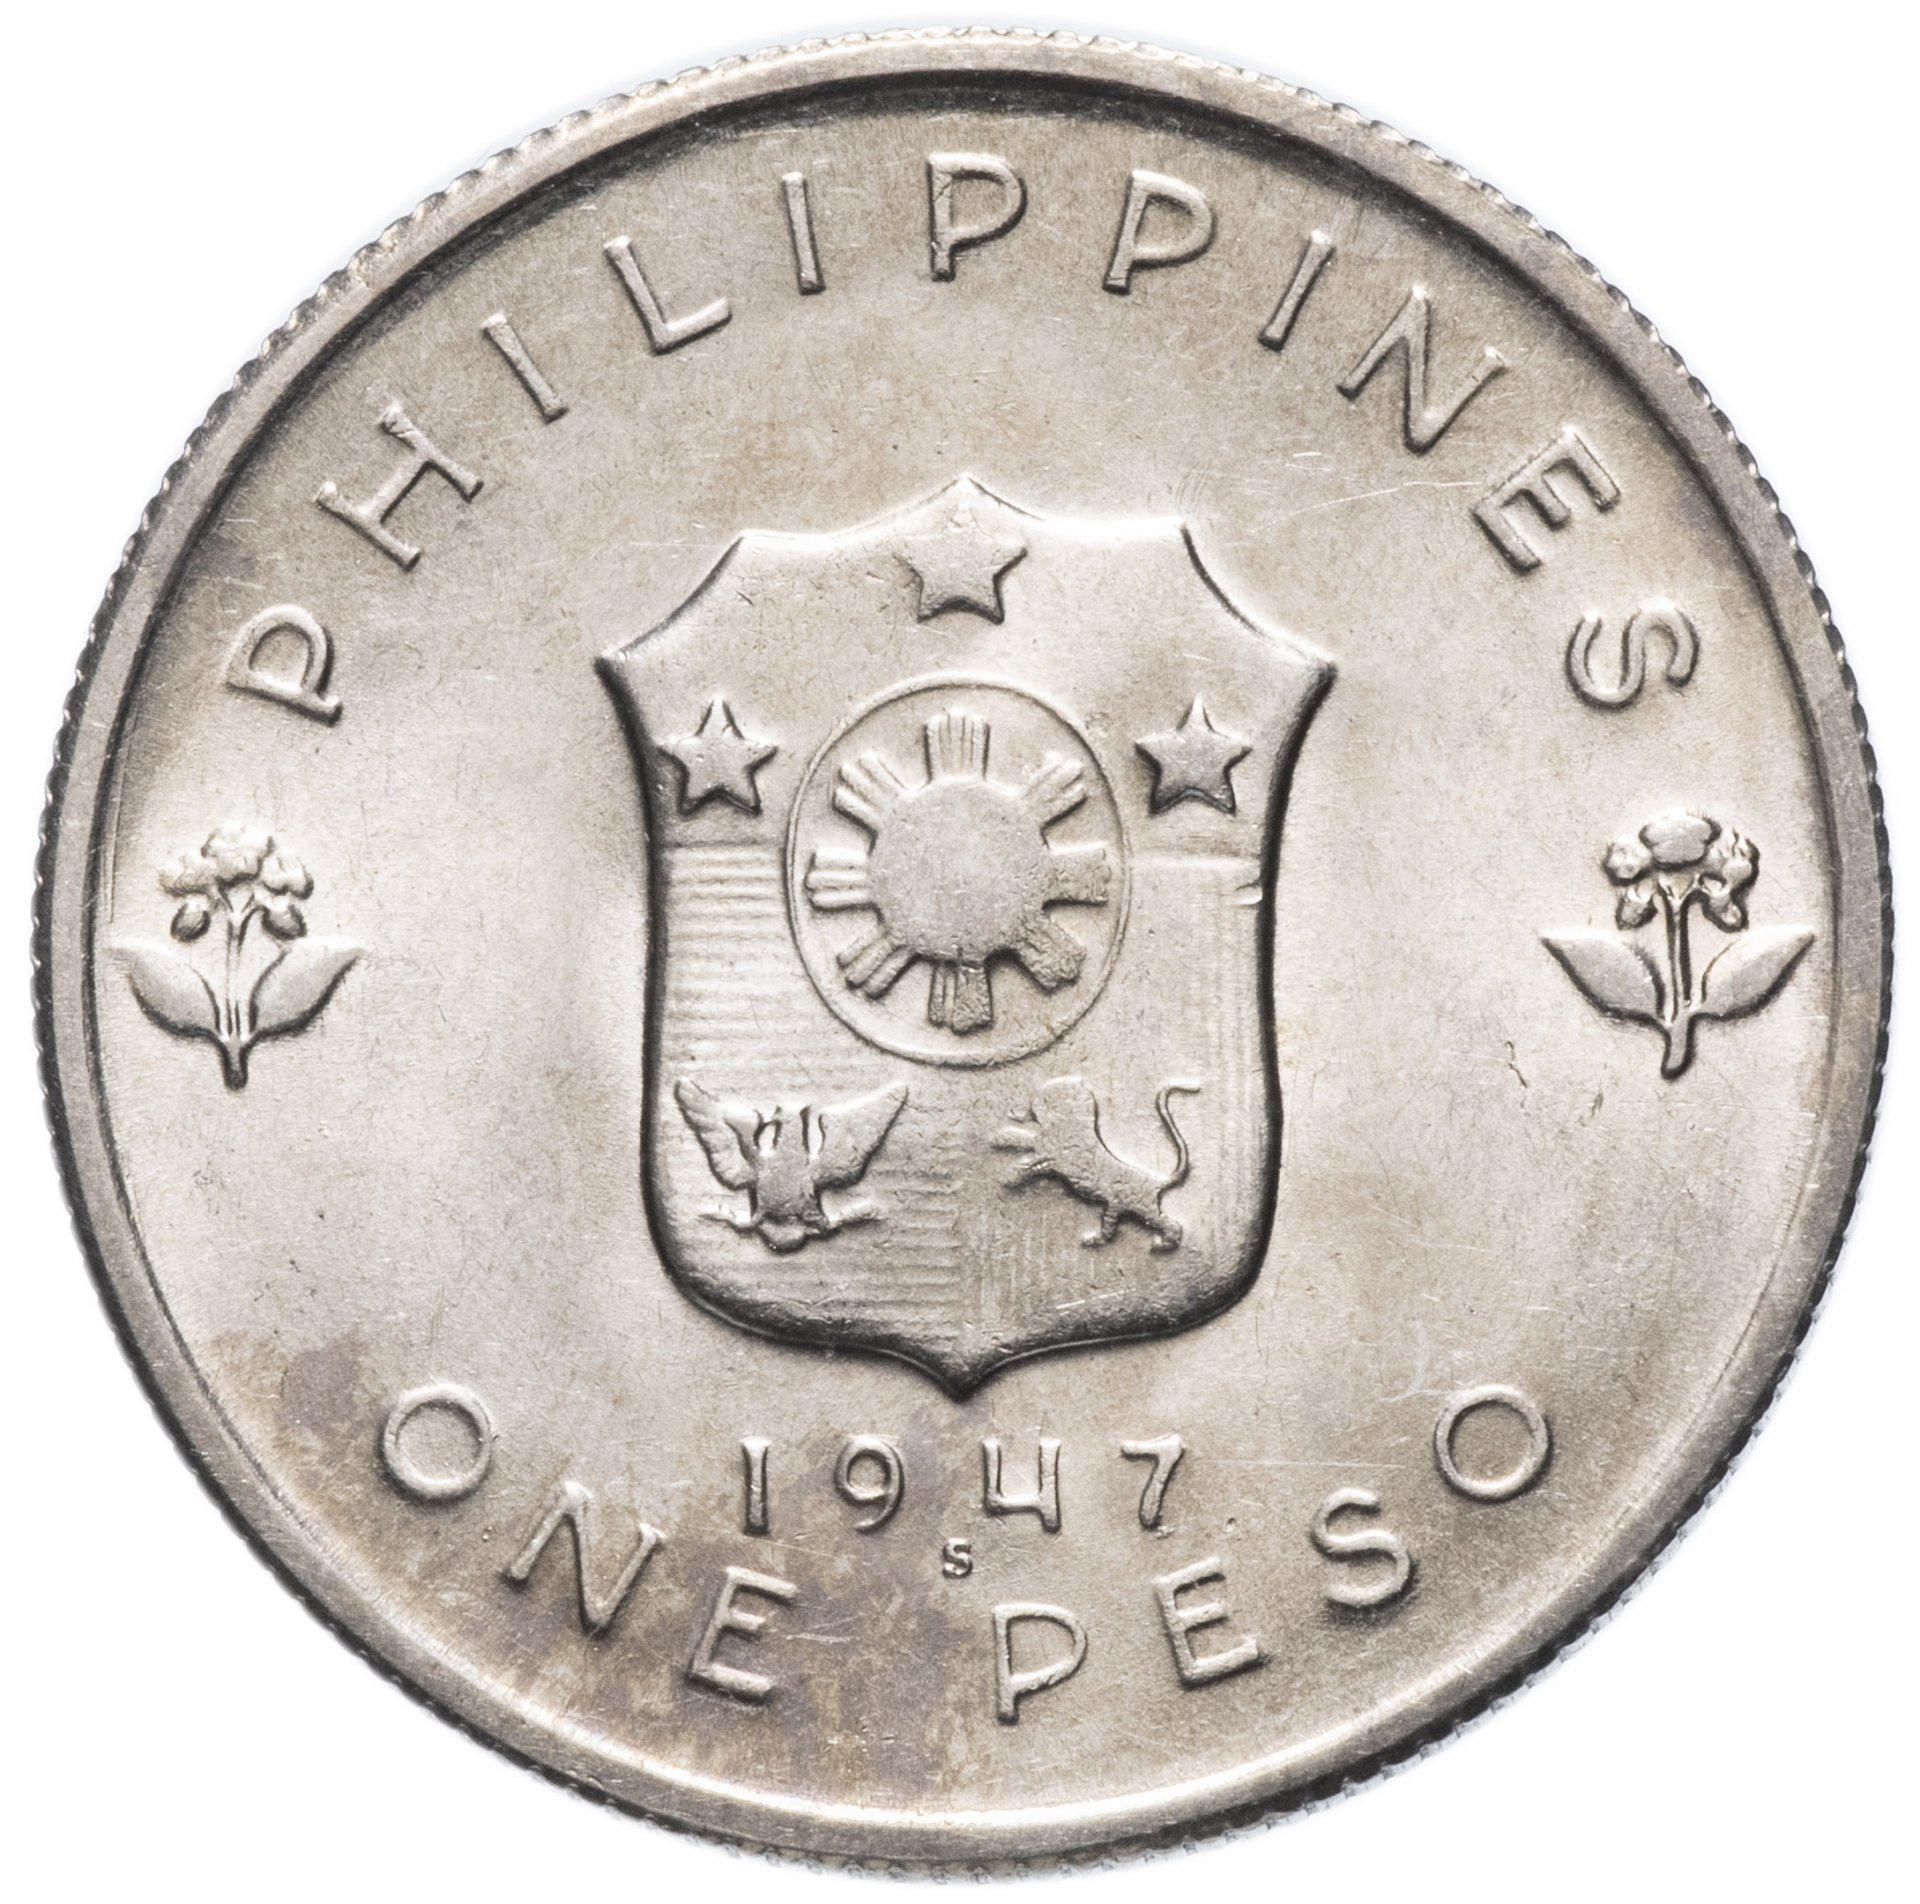 1 Песо Филиппины. 1 Песо 1947 - Дуглас МАКАРТУР. 1 Песо 1947. Филиппины 1 песо, 1992. 1 песо в долларах